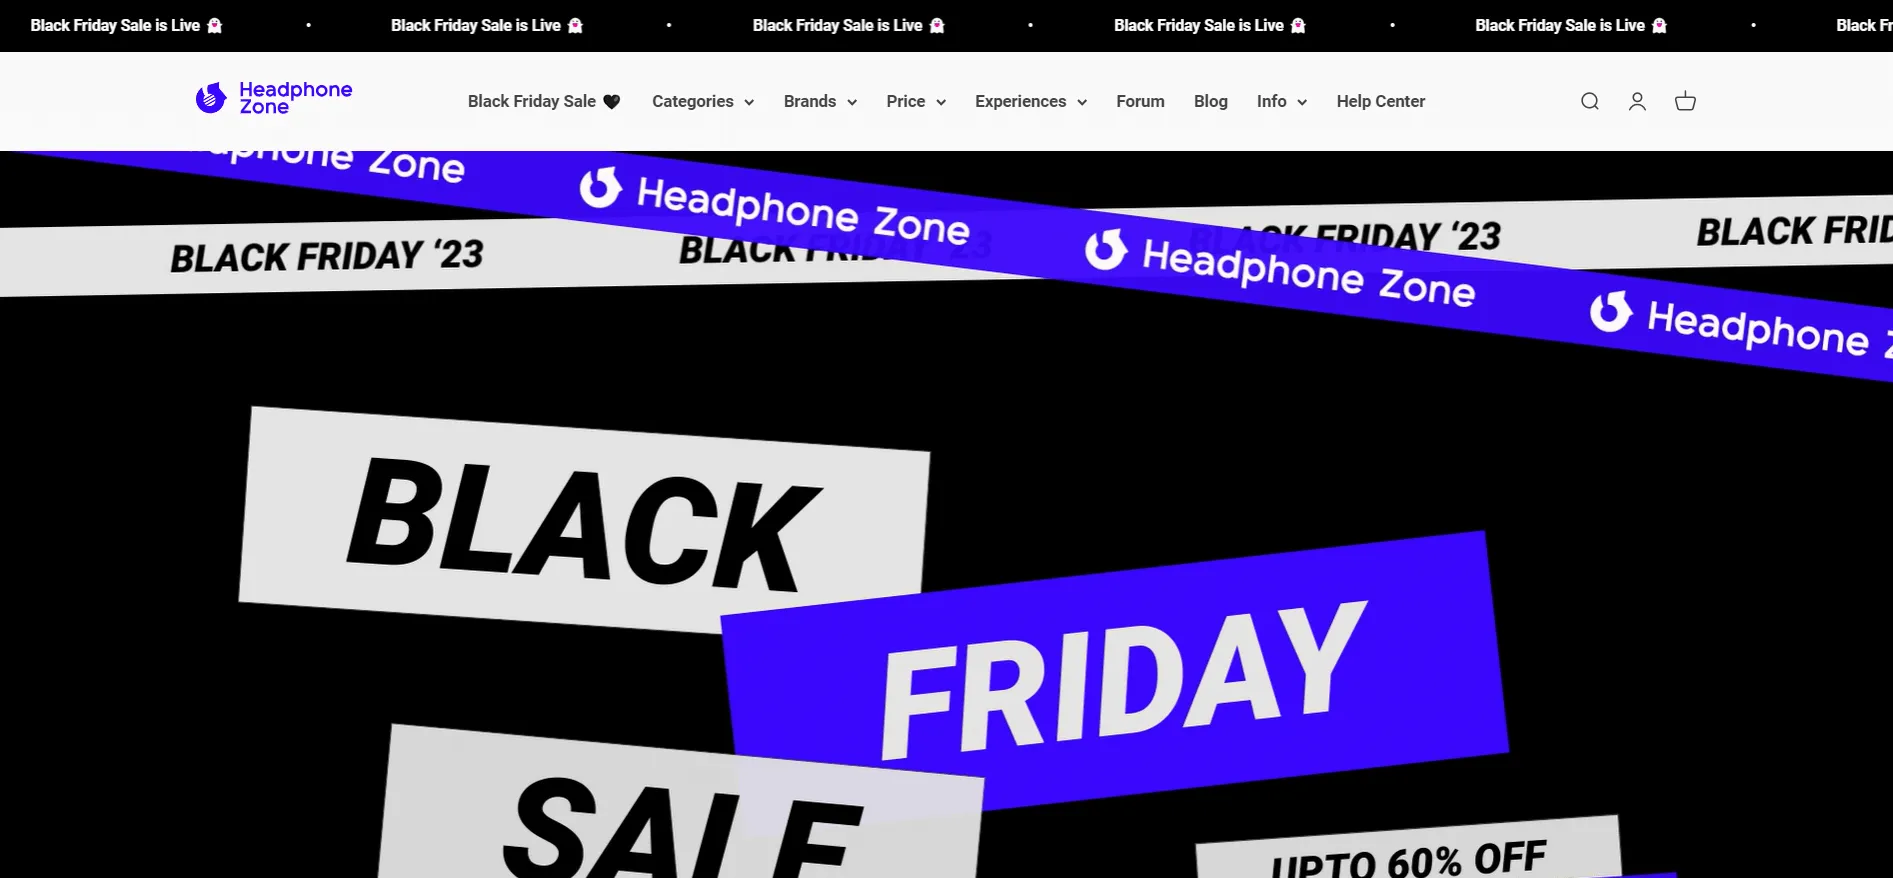 Headphone Zone’s website